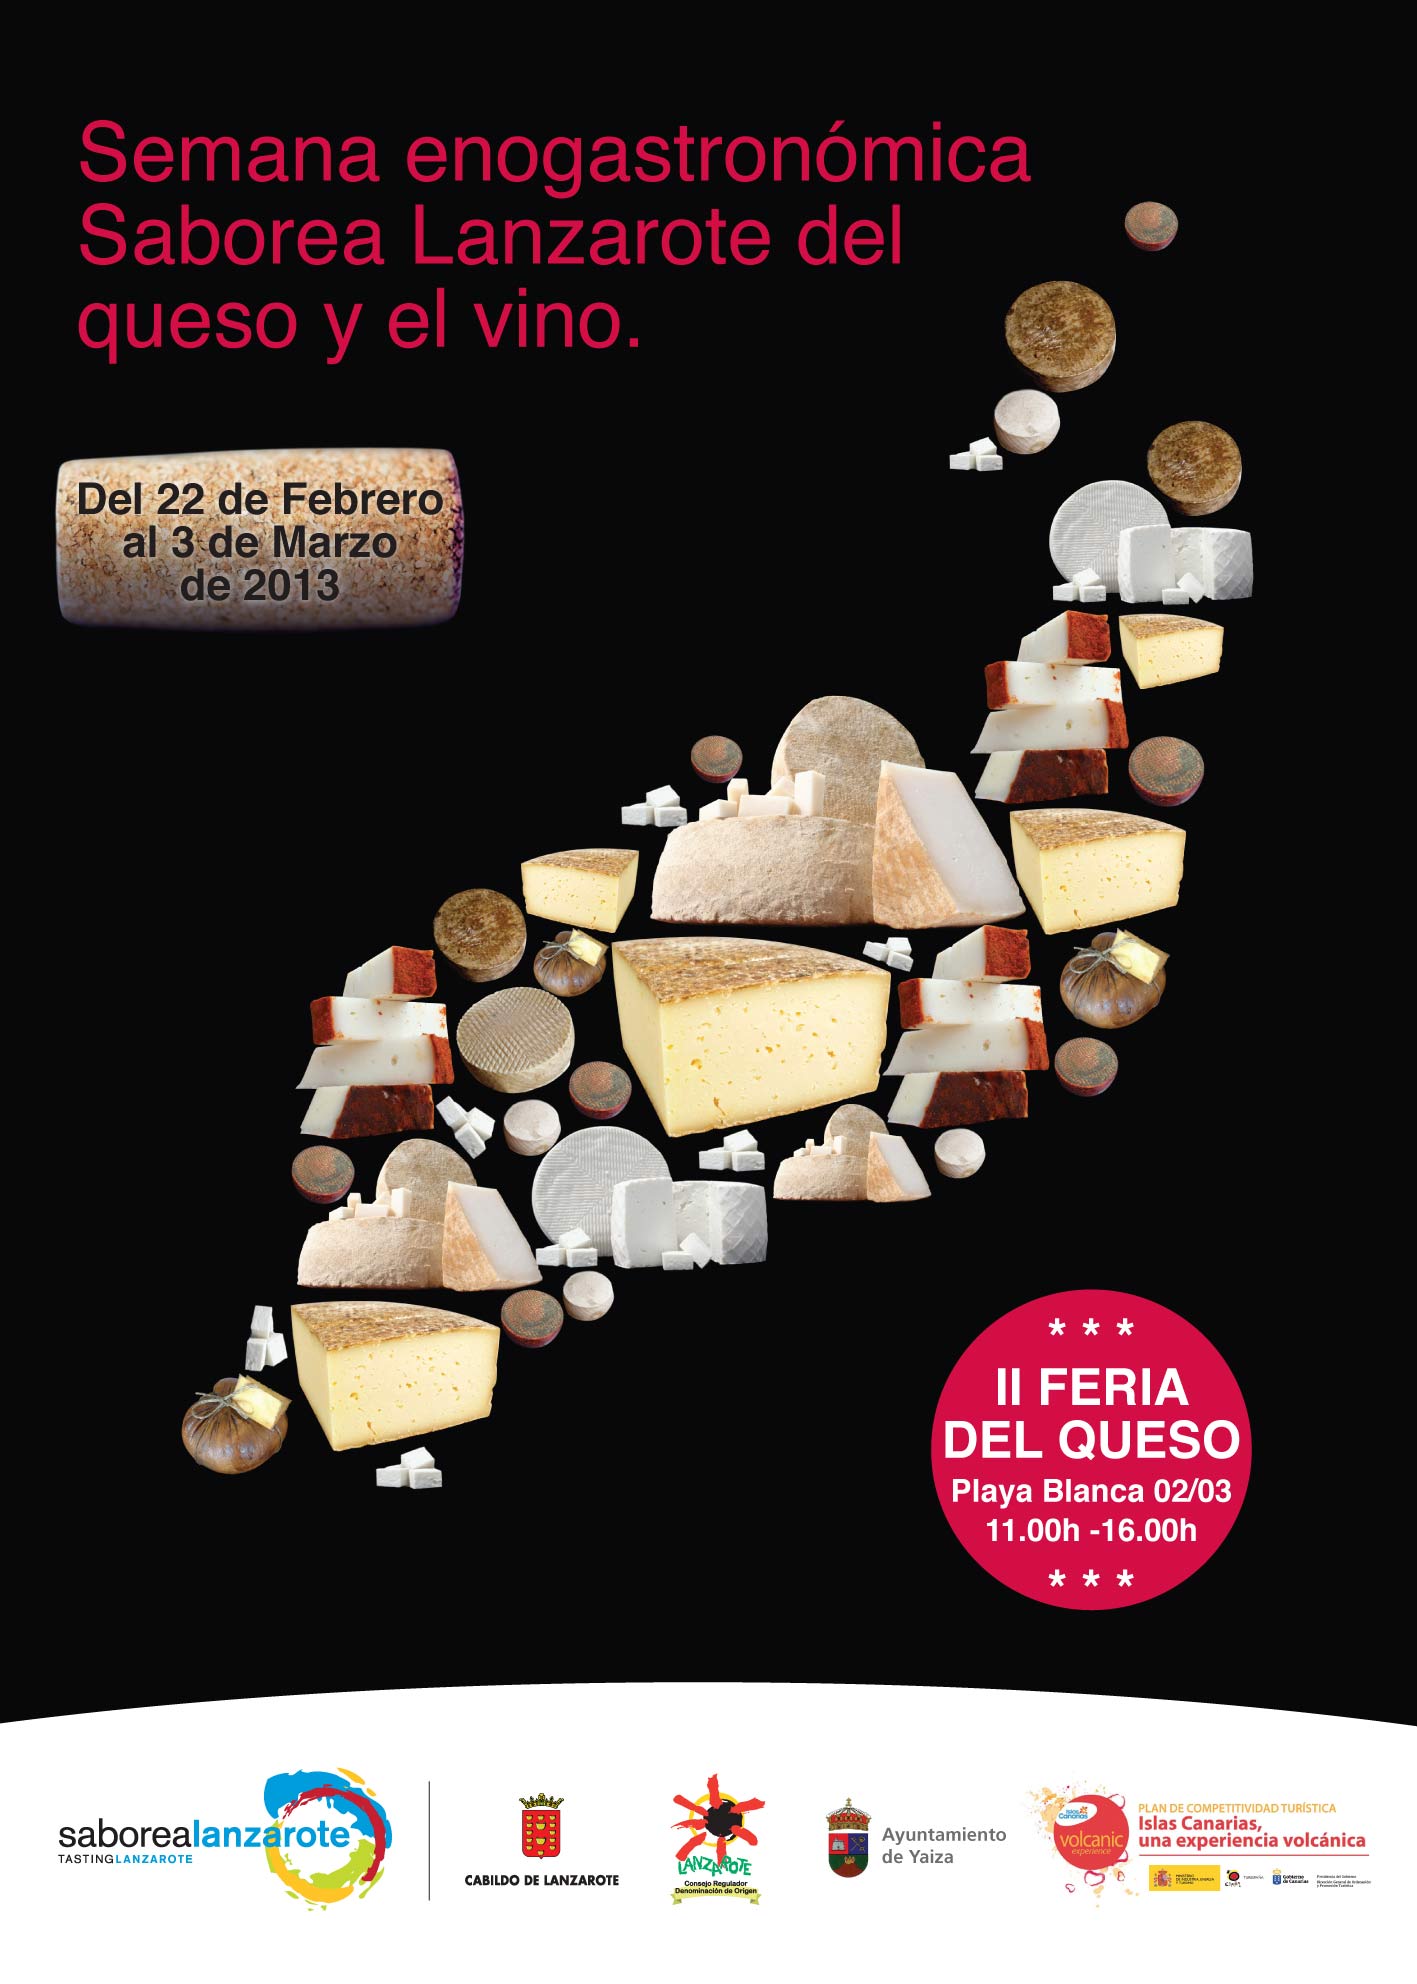 Semana enogastronómica saborea Lanzarote del queso y el vino del 22 de febrero al 02 de marzo, en Lanzarote